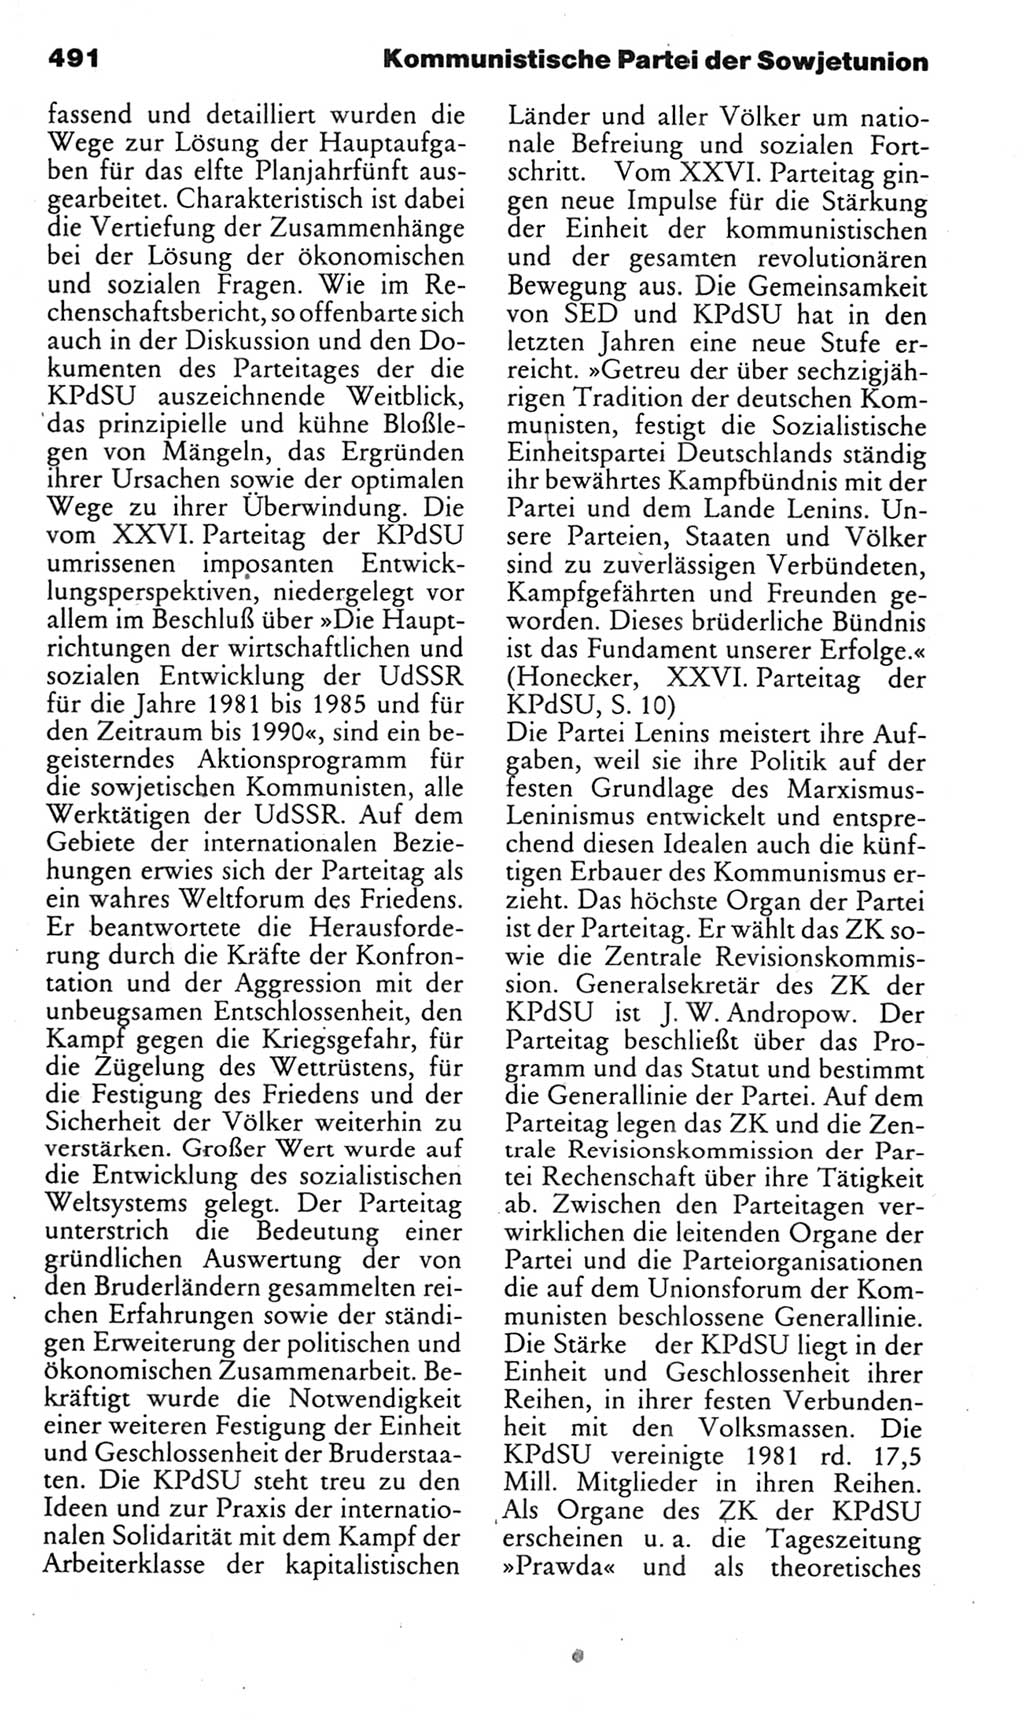 Kleines politisches Wörterbuch [Deutsche Demokratische Republik (DDR)] 1985, Seite 491 (Kl. pol. Wb. DDR 1985, S. 491)